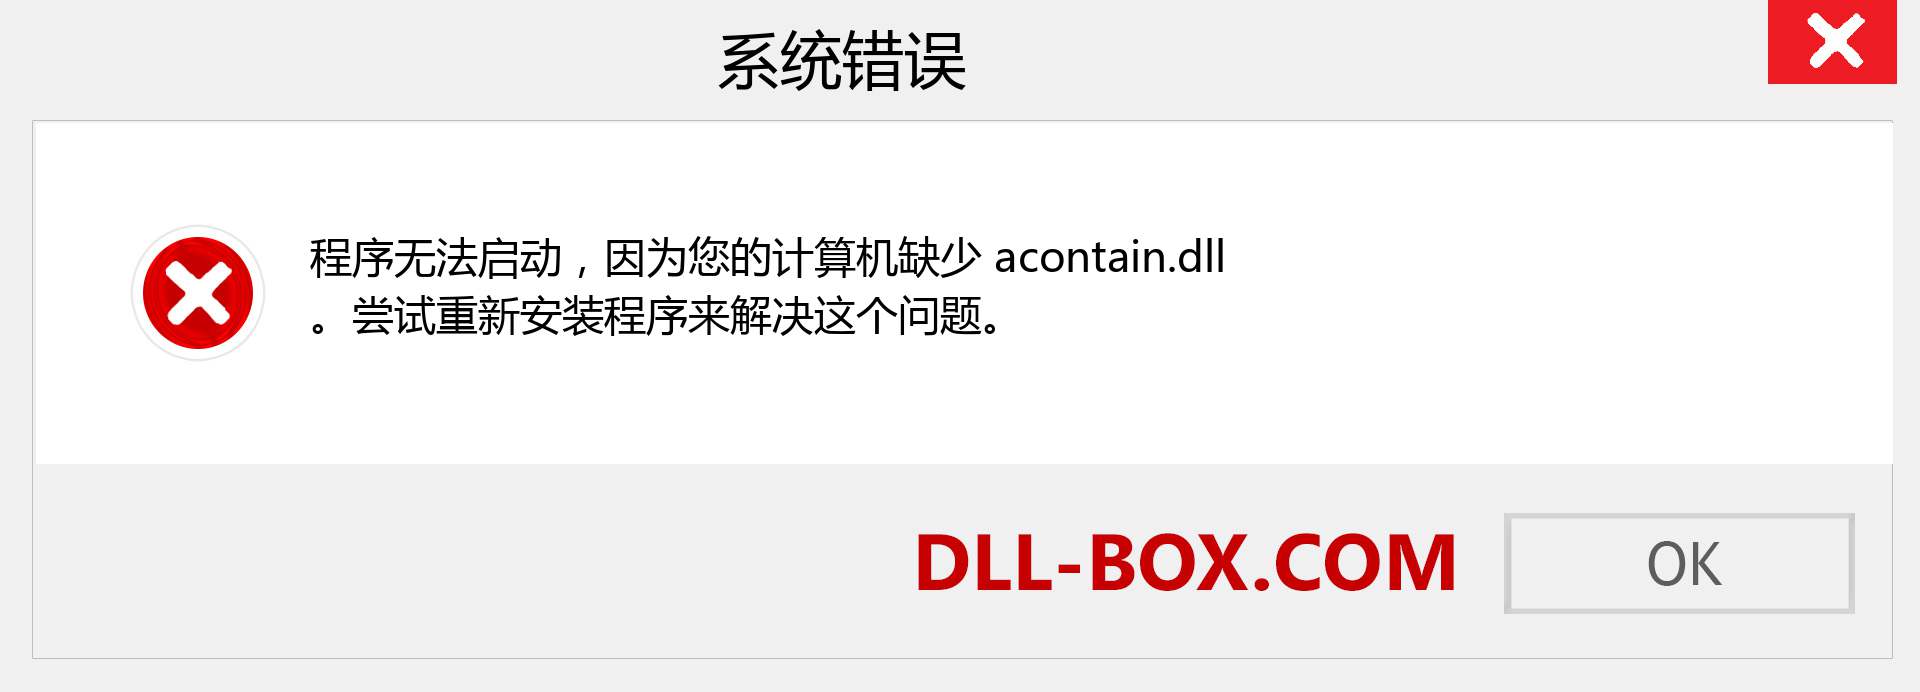 acontain.dll 文件丢失？。 适用于 Windows 7、8、10 的下载 - 修复 Windows、照片、图像上的 acontain dll 丢失错误